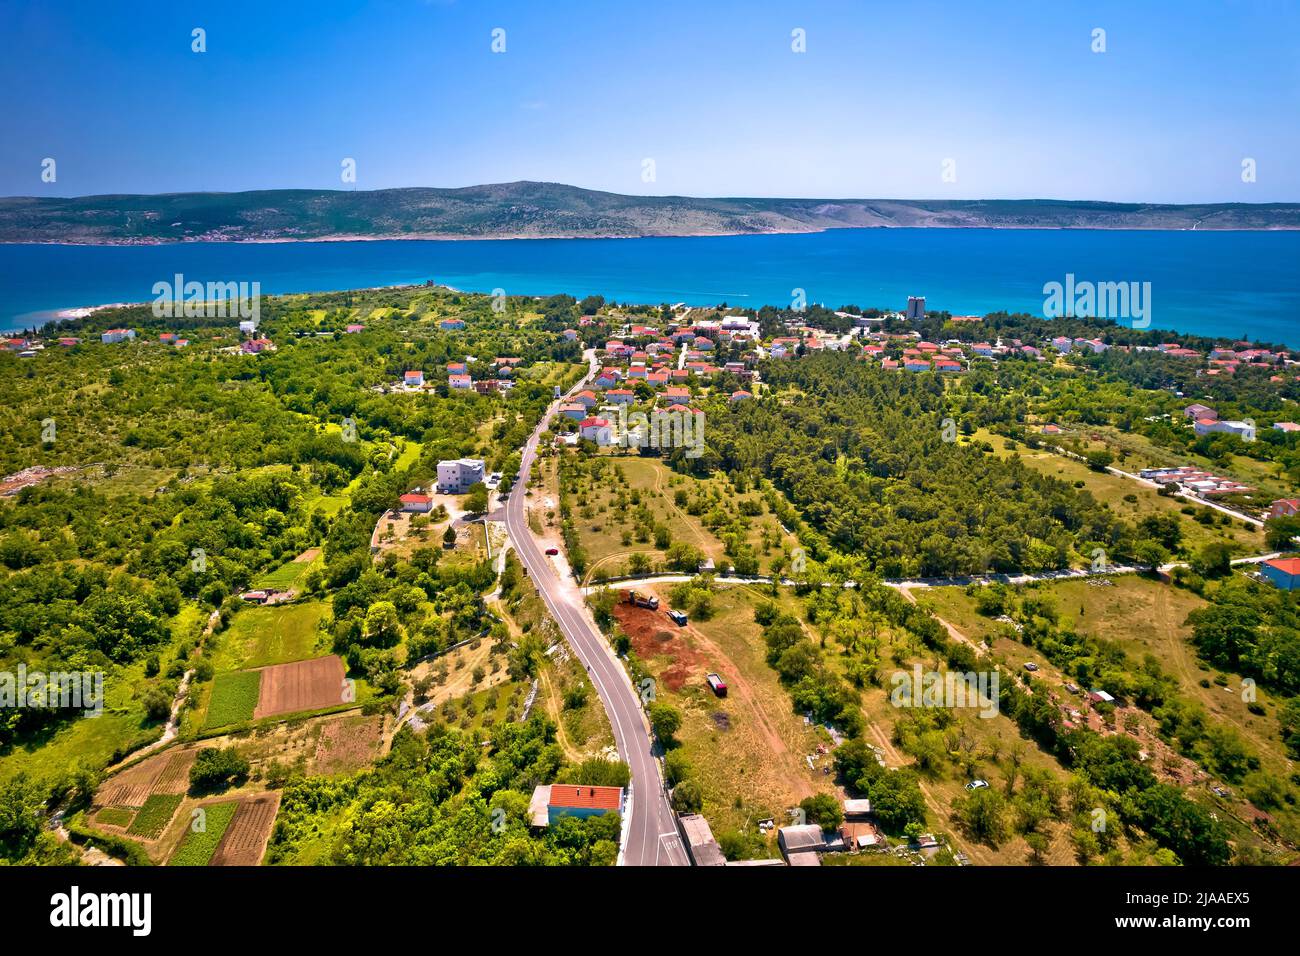 Starigrad Paklenica scenic coastline landscape aerial view, Dalmatia region of Croatia Stock Photo